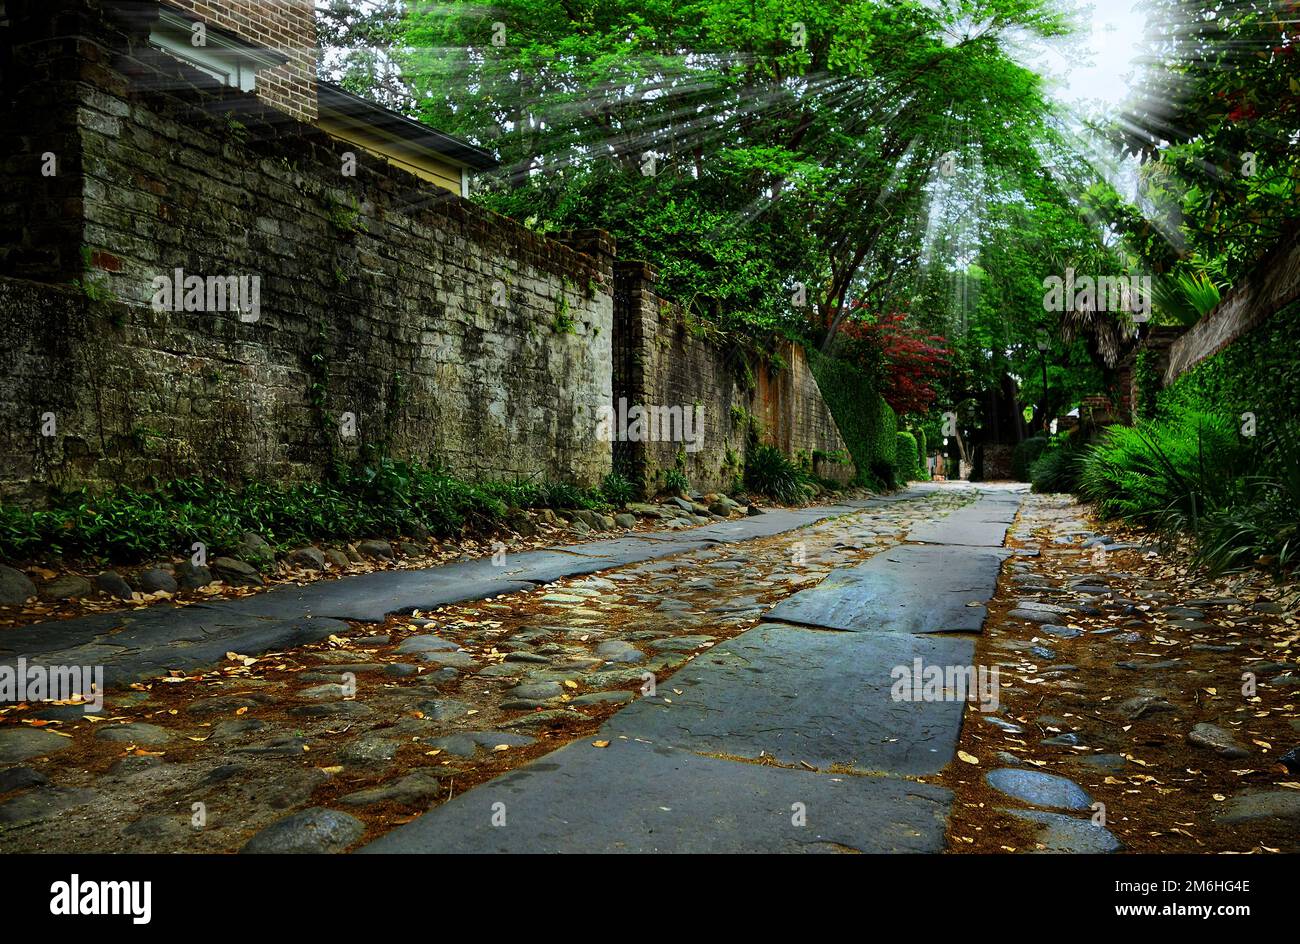 Une rue calme et pavée dans la ville historique de Charleston SC Banque D'Images